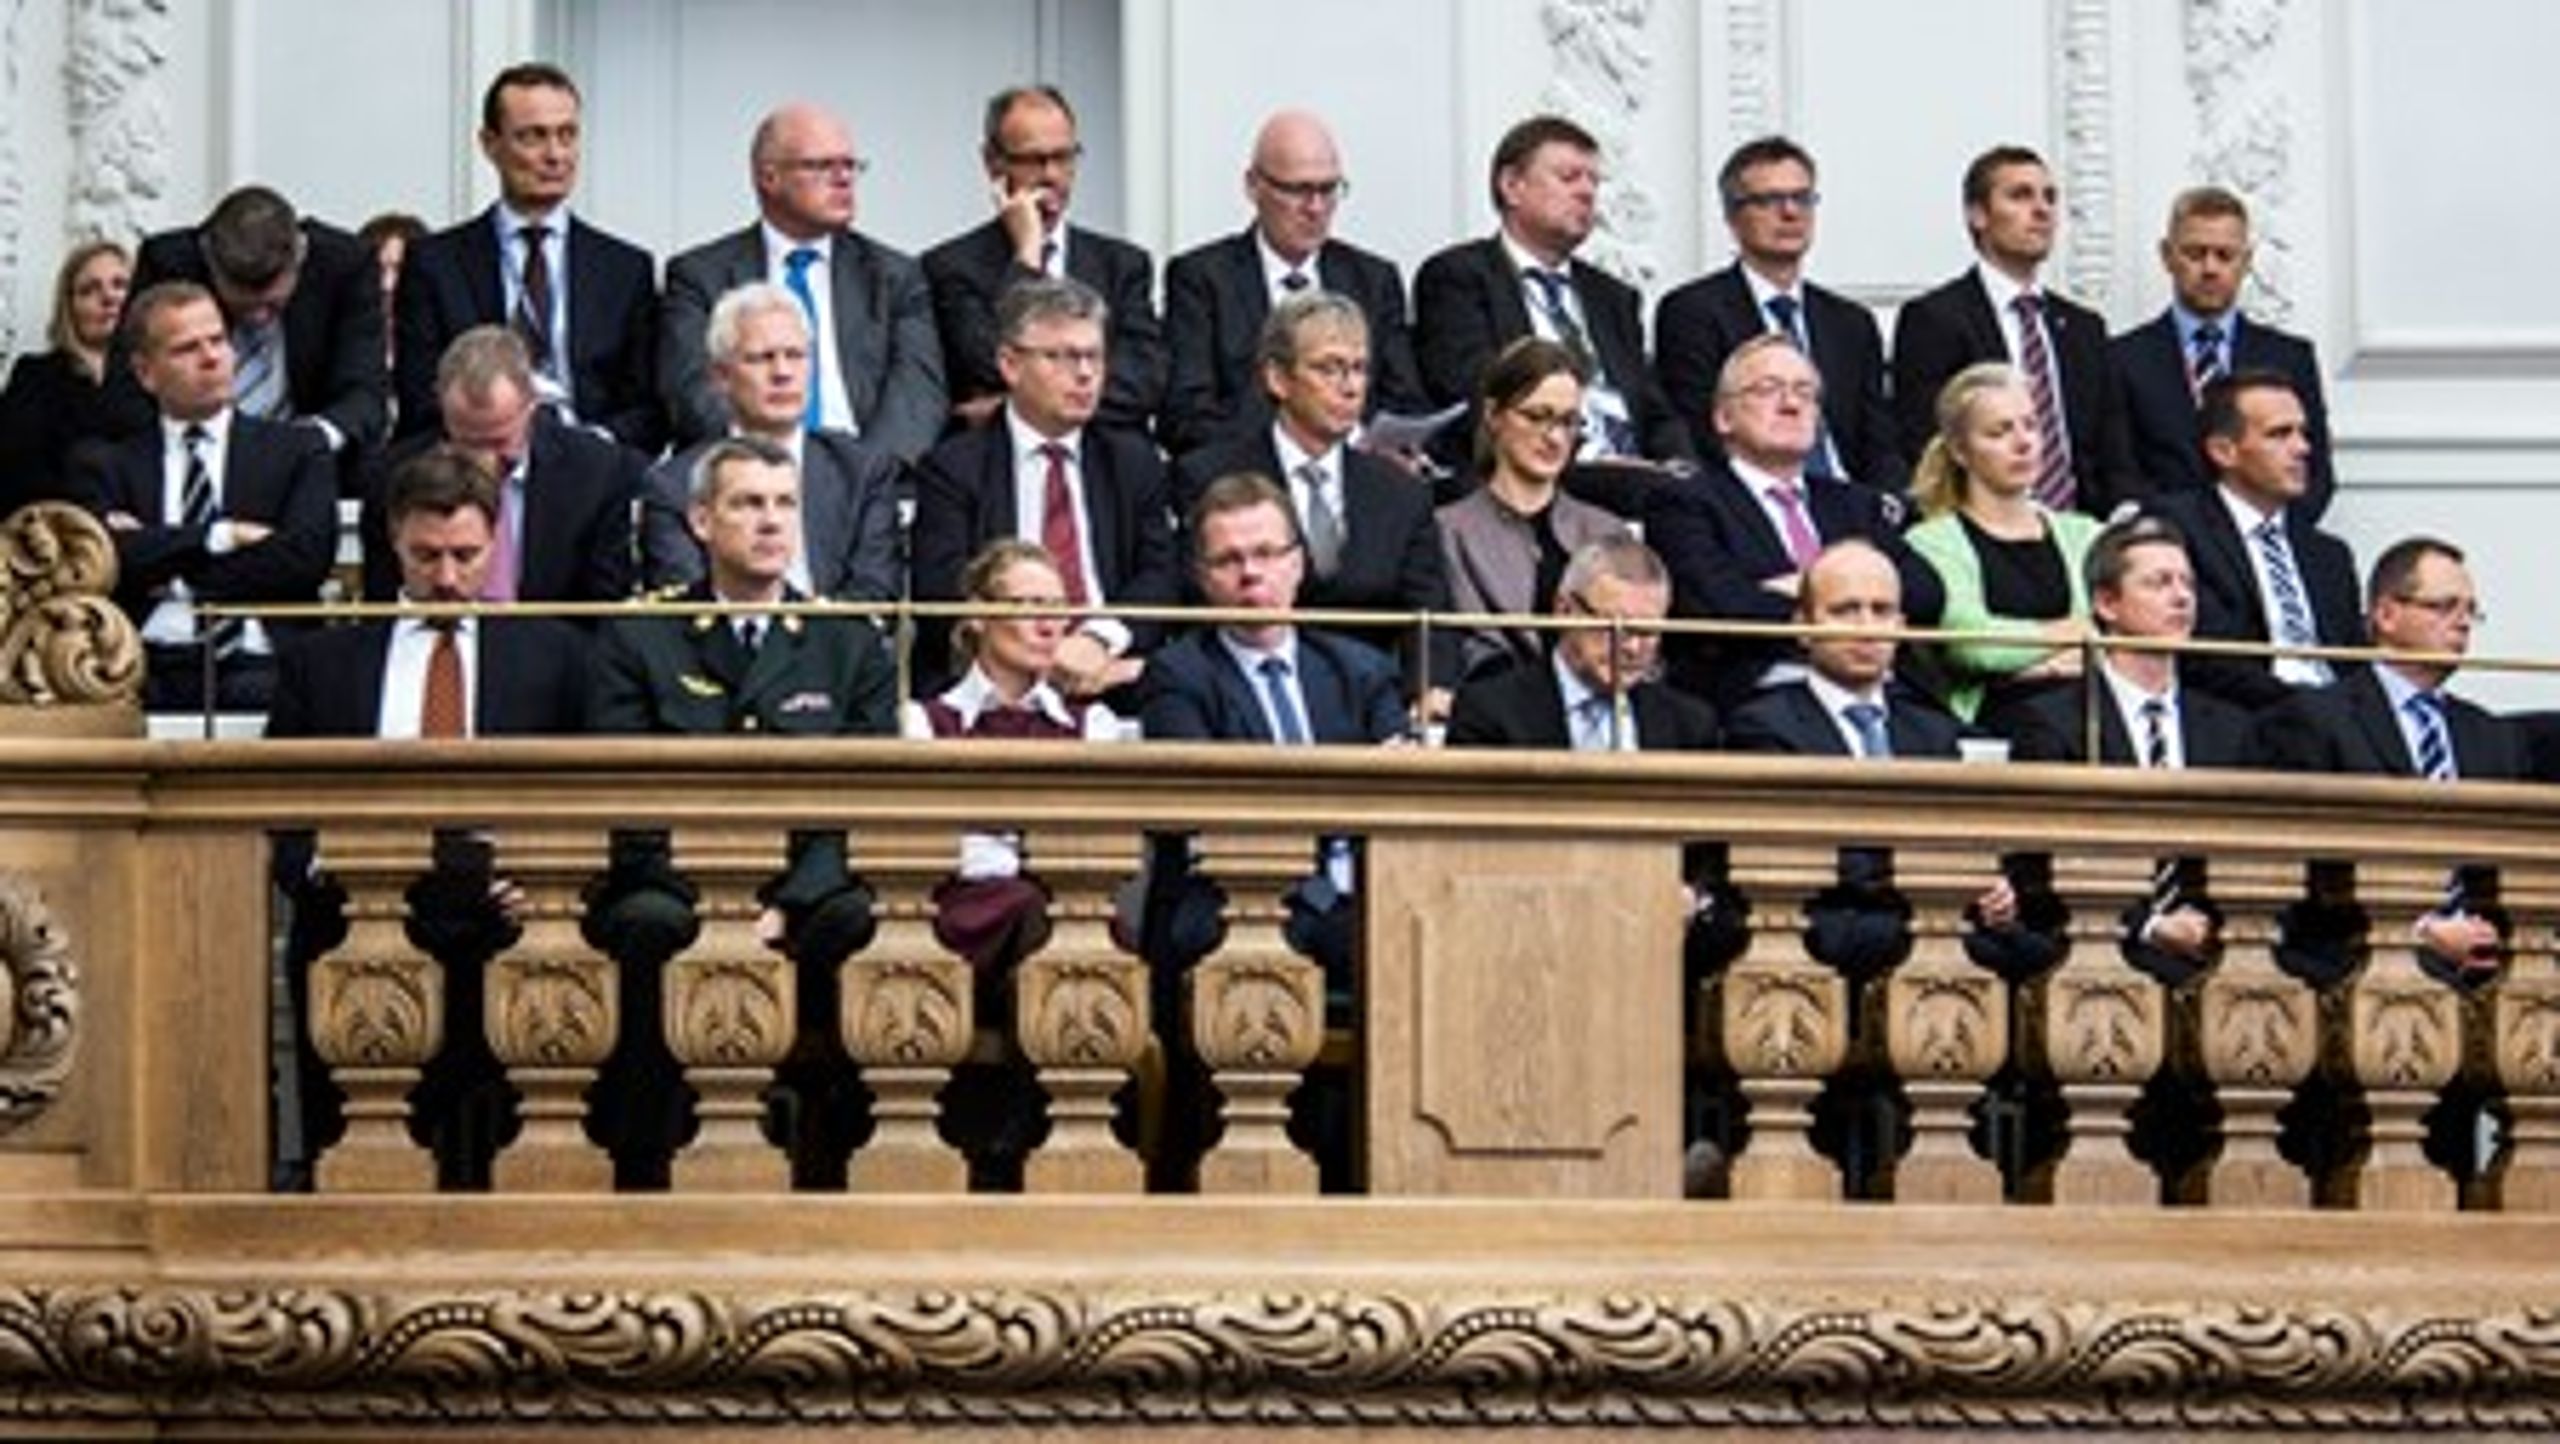 Danmark er et af de lande, der ikke har tradition for politisk udpegede embedsmænd, og hvor for eksempel departementchefkredsen forbliver den samme på trods af regeringsskift. <br>